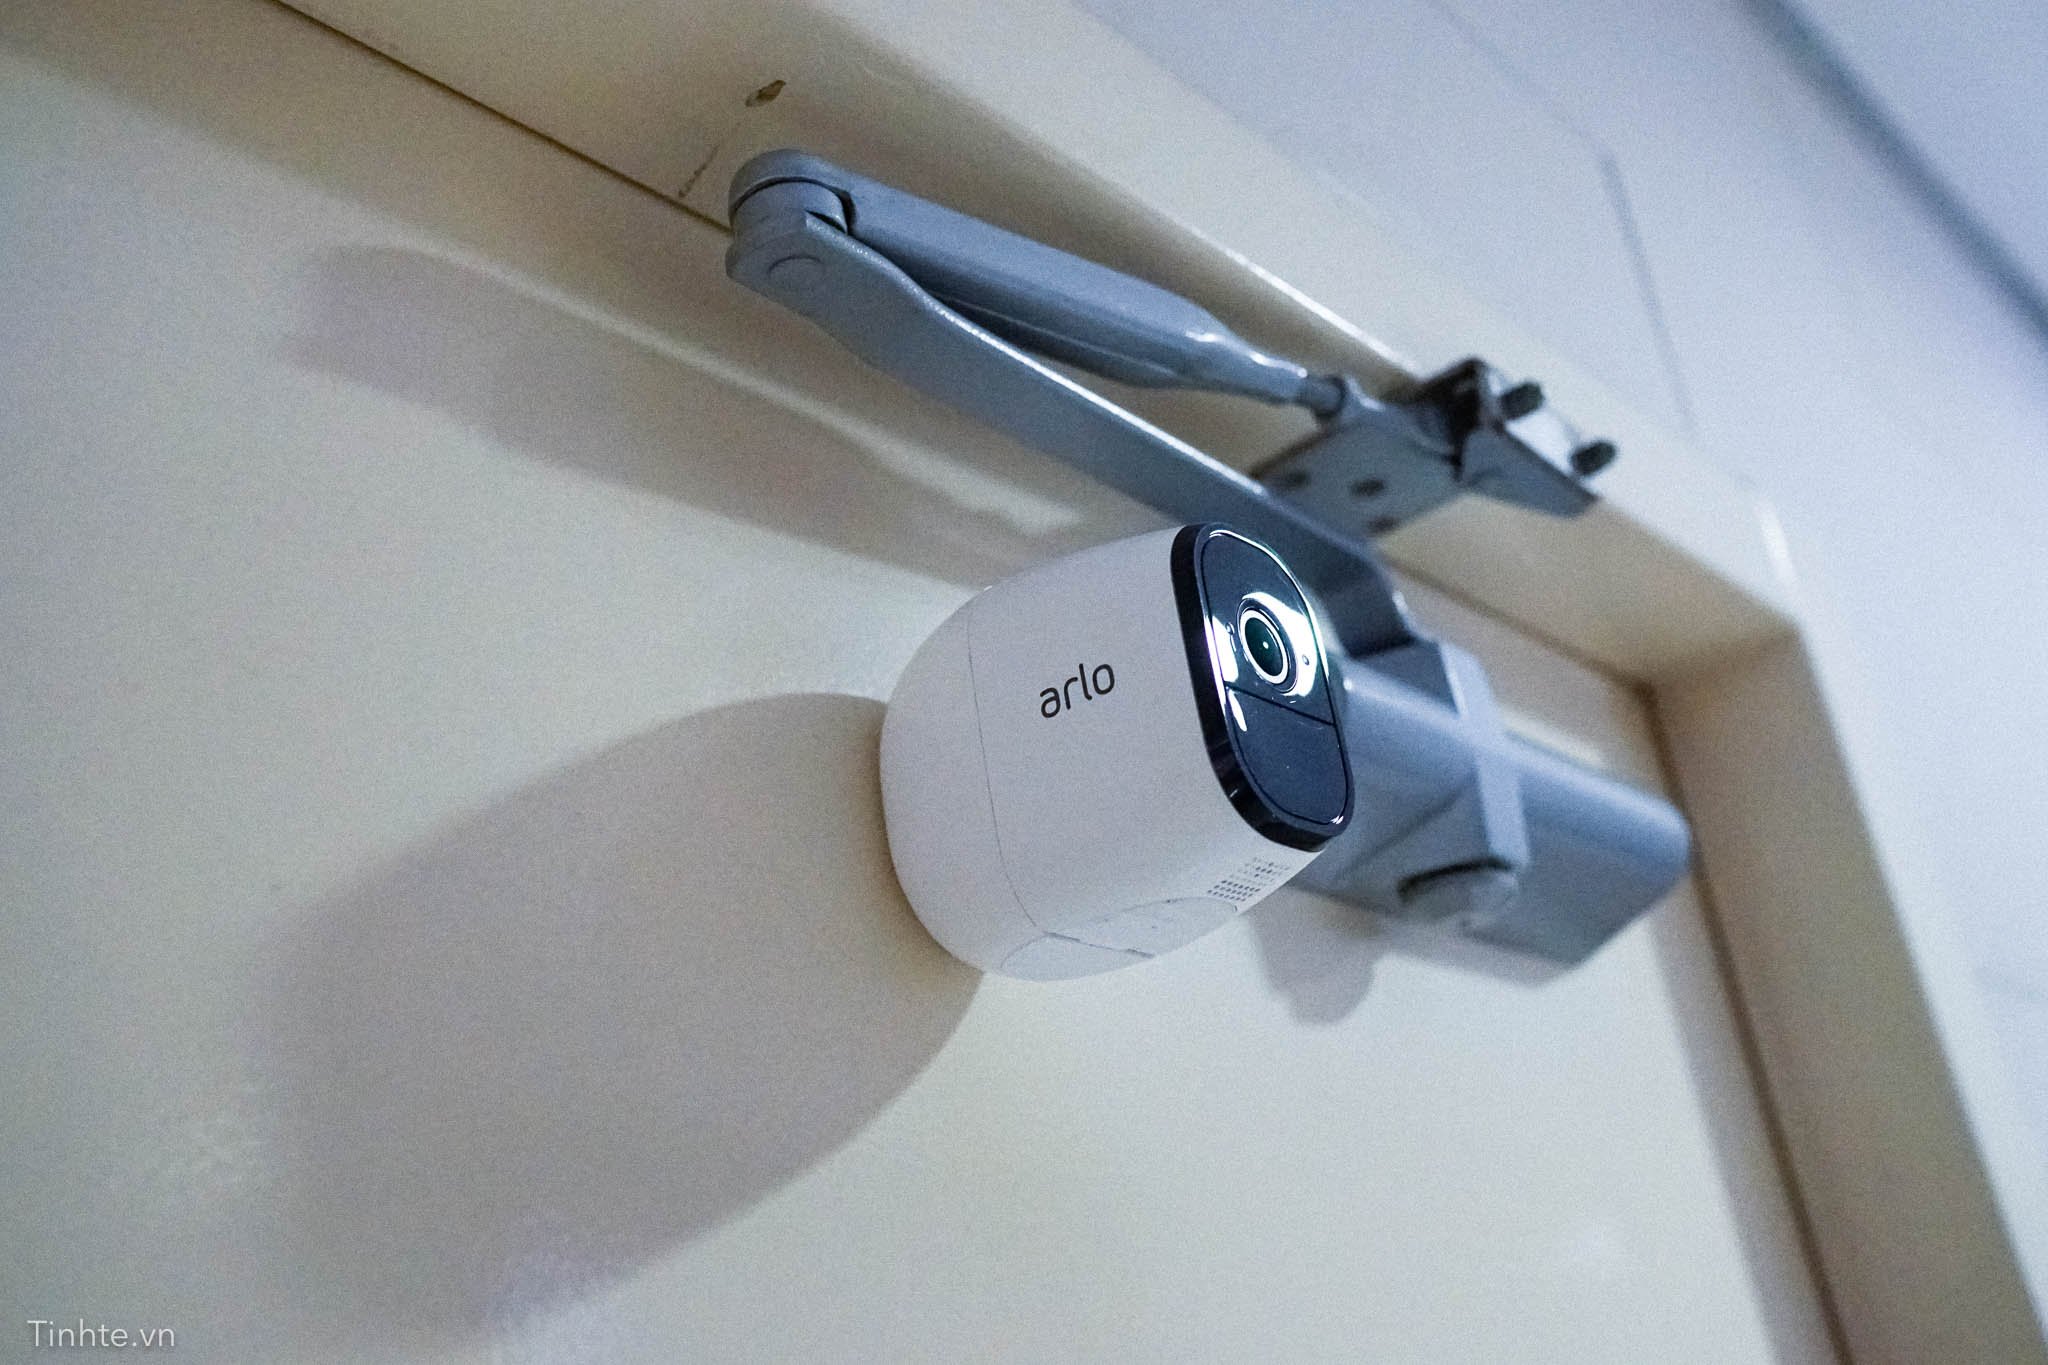 Netgear Arlo Pro: camera an ninh không dây đúng nghĩa, chống mưa gió, pin 6 tháng sạc 1 lần 4195388_tinhte-netgear-arlo-5